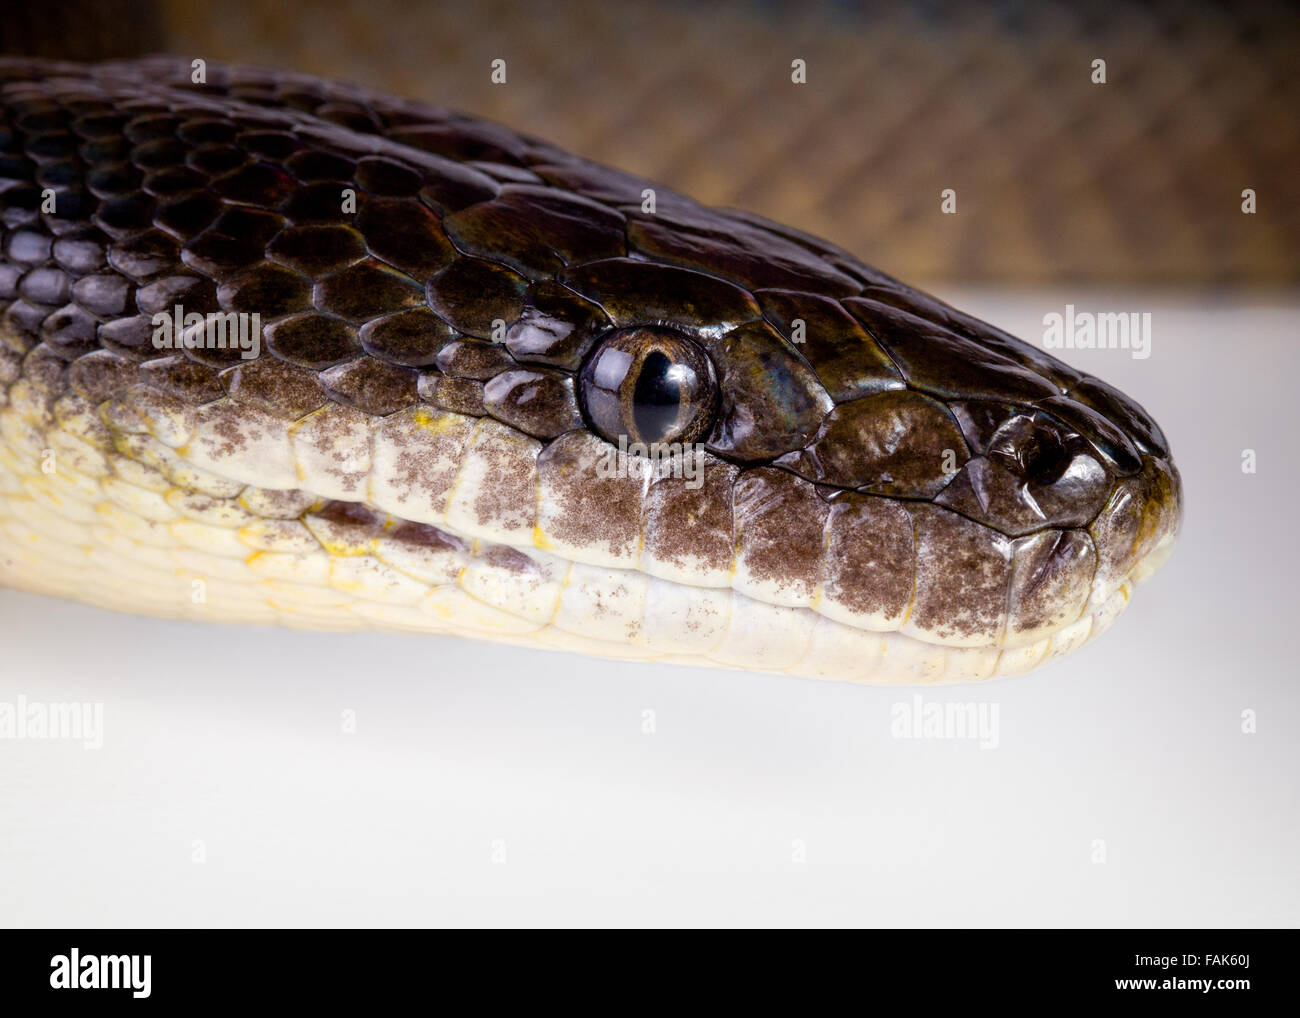 Un gros plan d'un python de l'eau, sur un fond blanc Banque D'Images